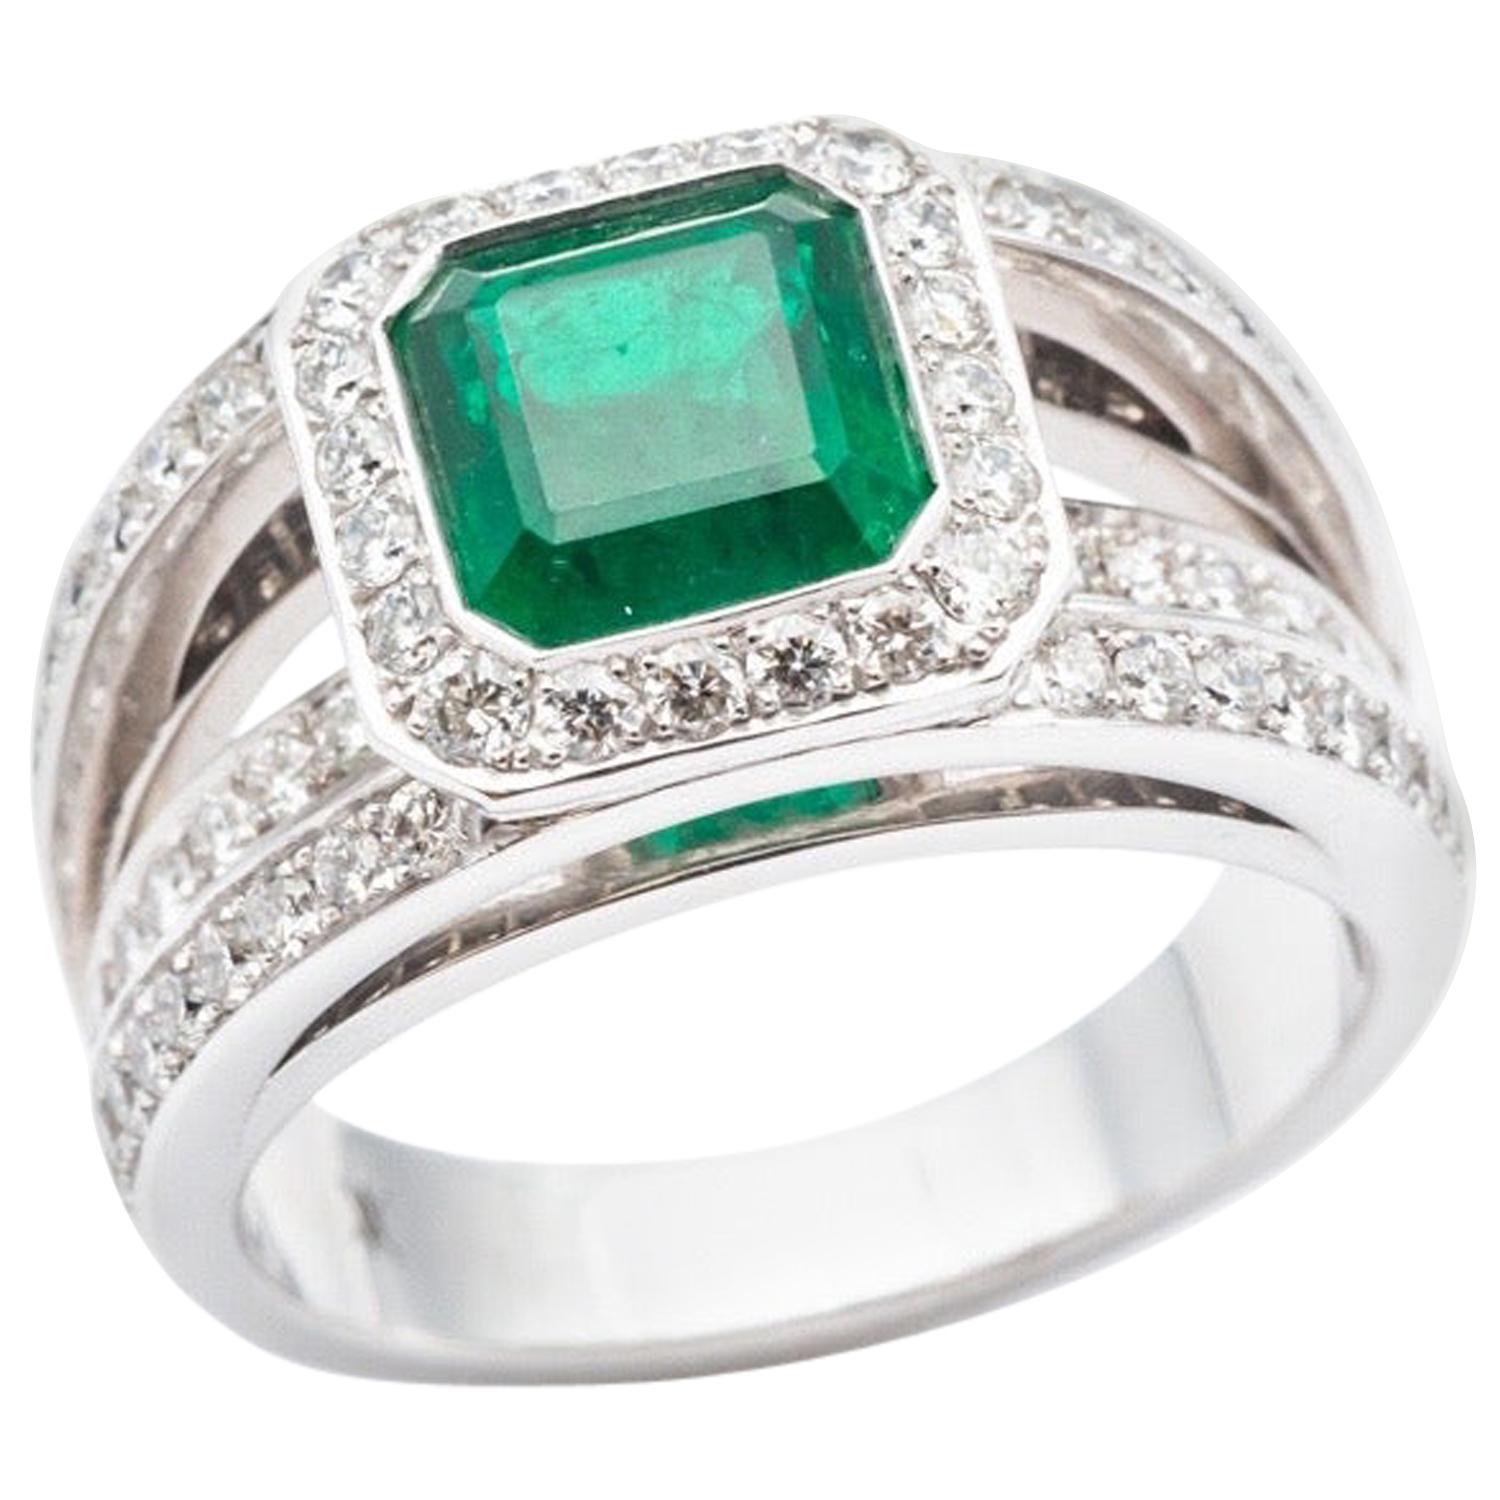 Certified Emerald Ring Diamond Paving White Gold 18 Karat